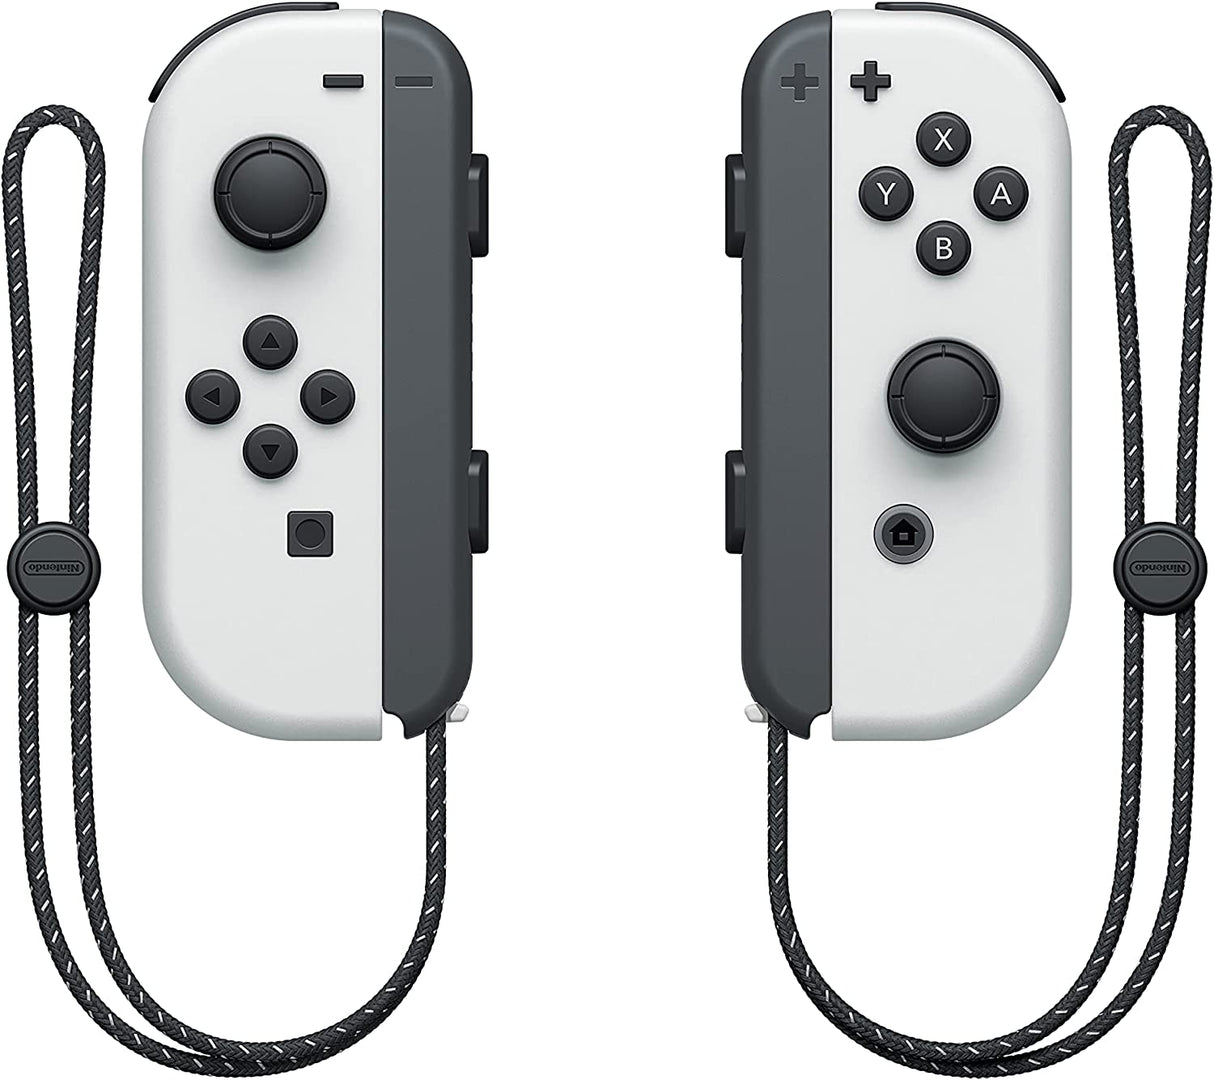 Nintendo Switch – OLED Model w/ White Joy-Con - Level UpOLEDNintendo4902370548556